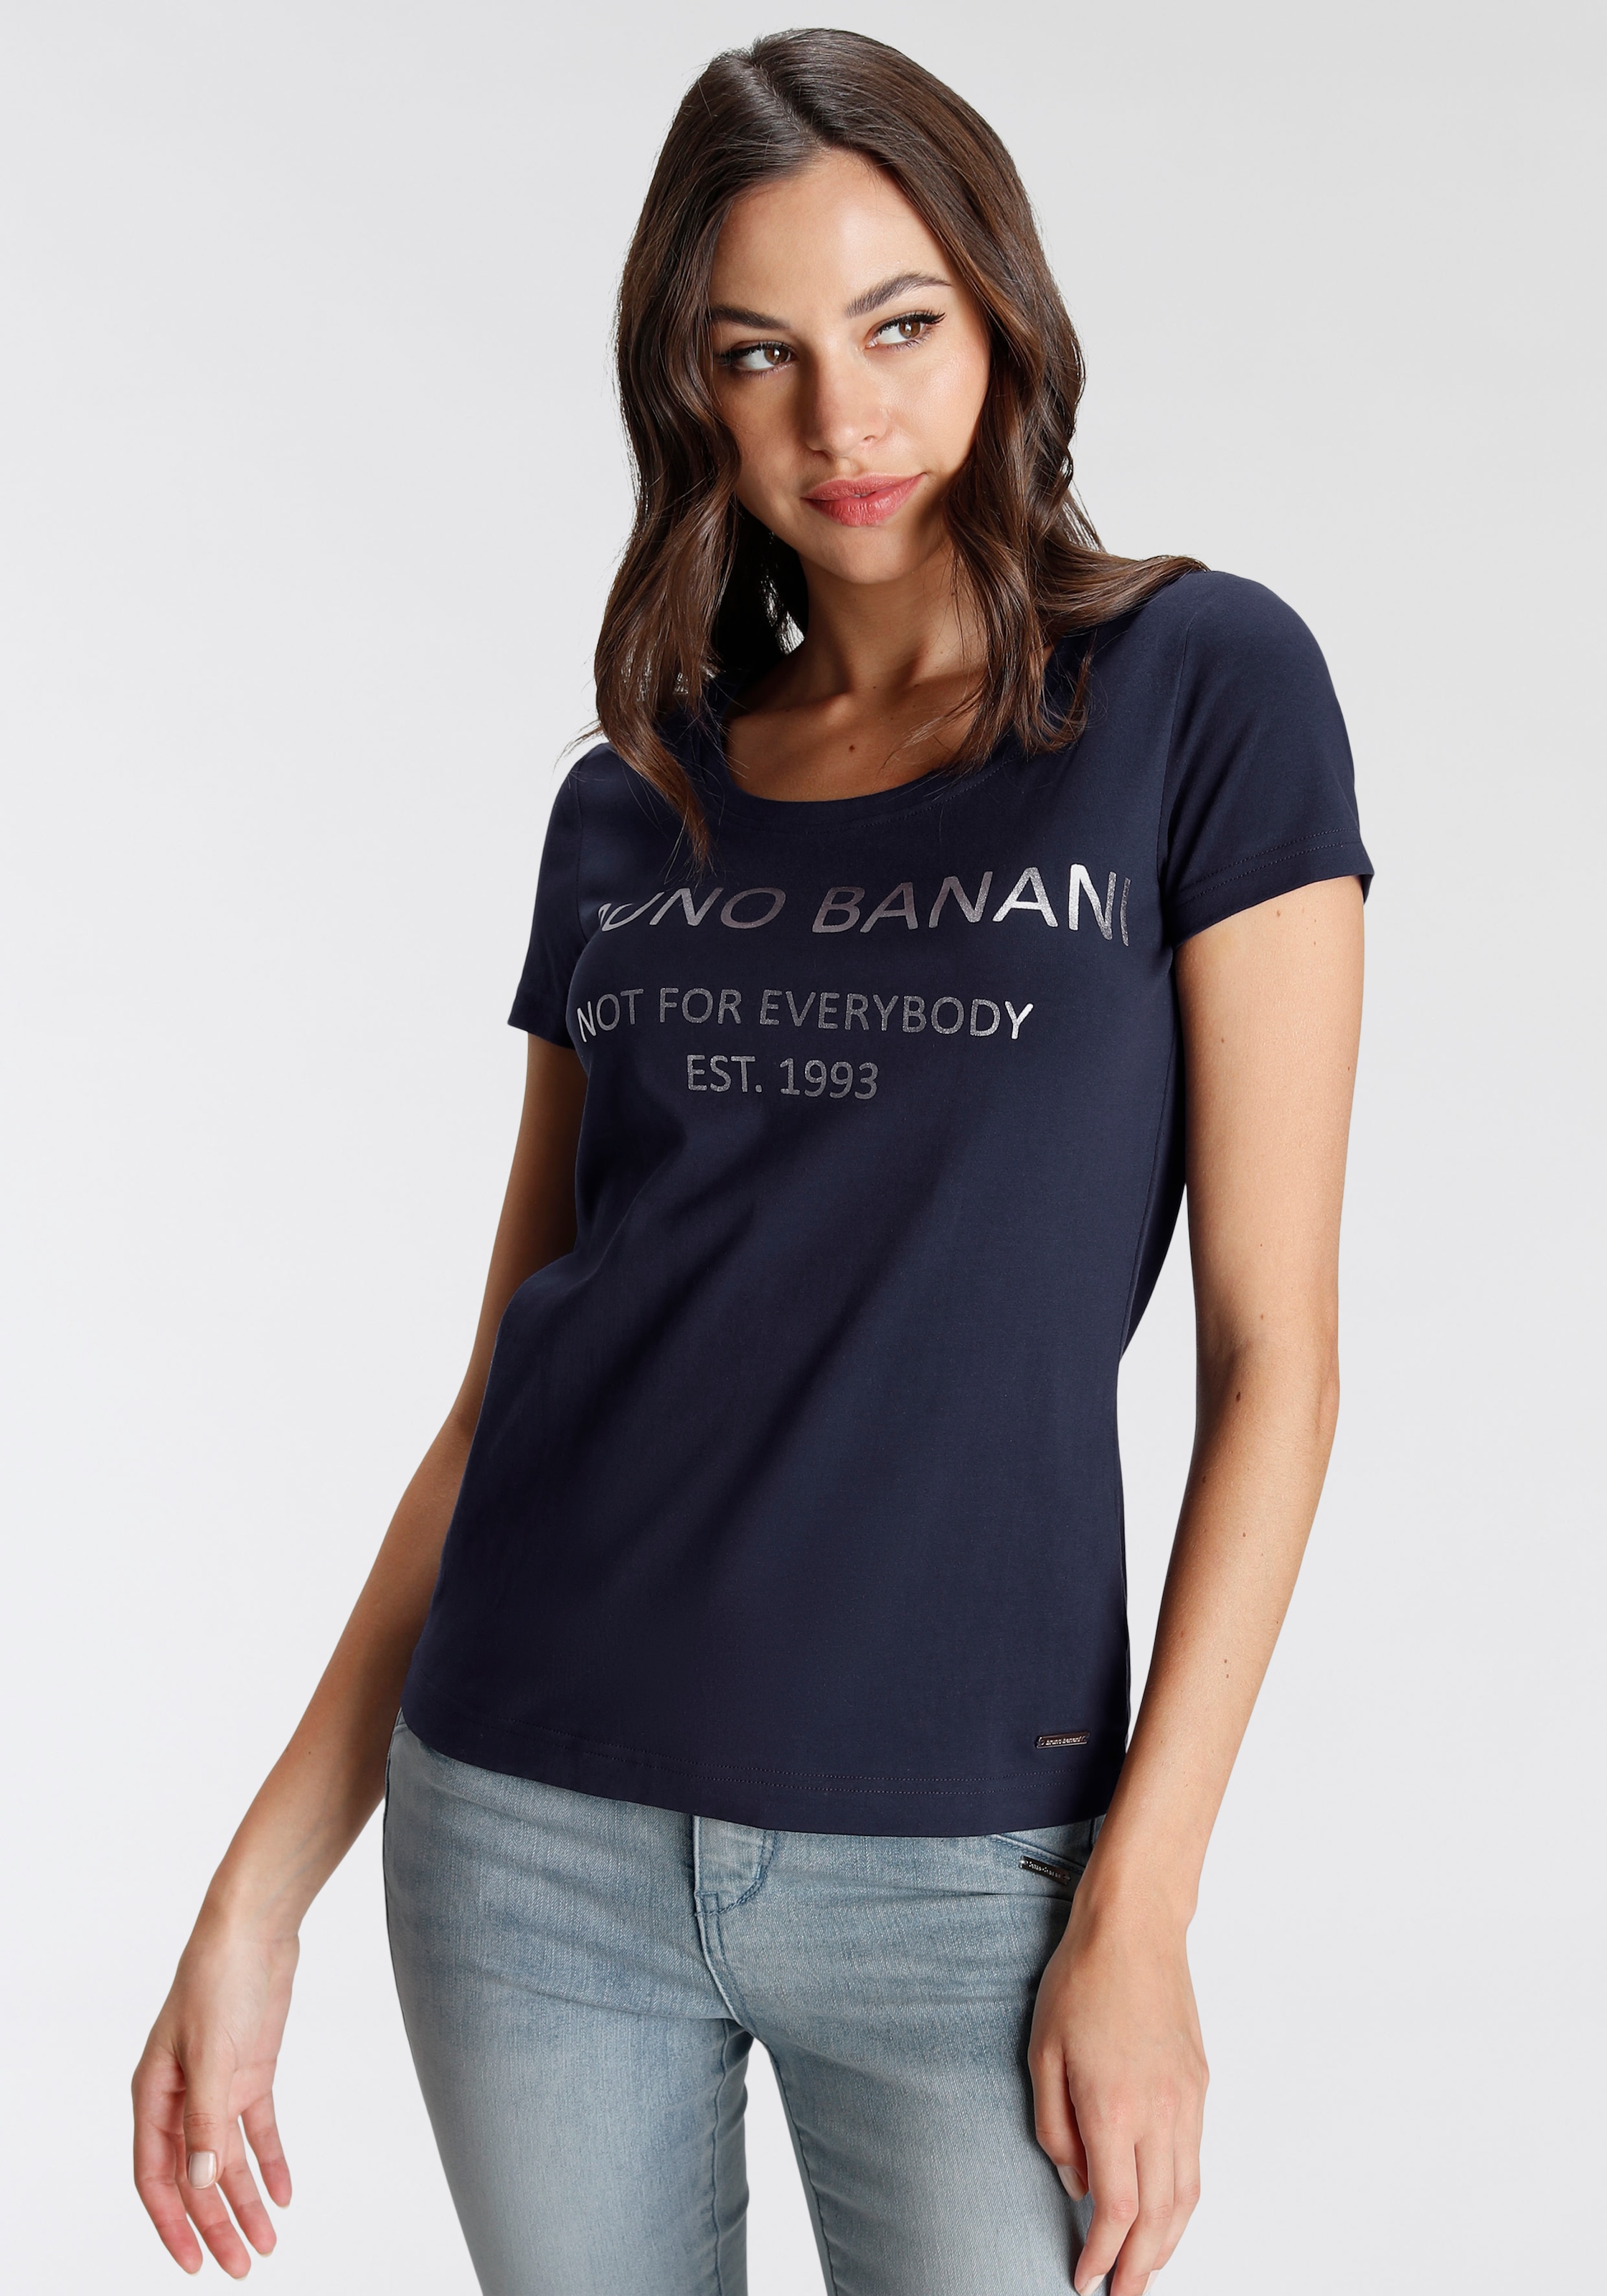 Logodruck NEUE T-Shirt, OTTO online mit bei Banani Bruno KOLLEKTION goldfarbenem kaufen